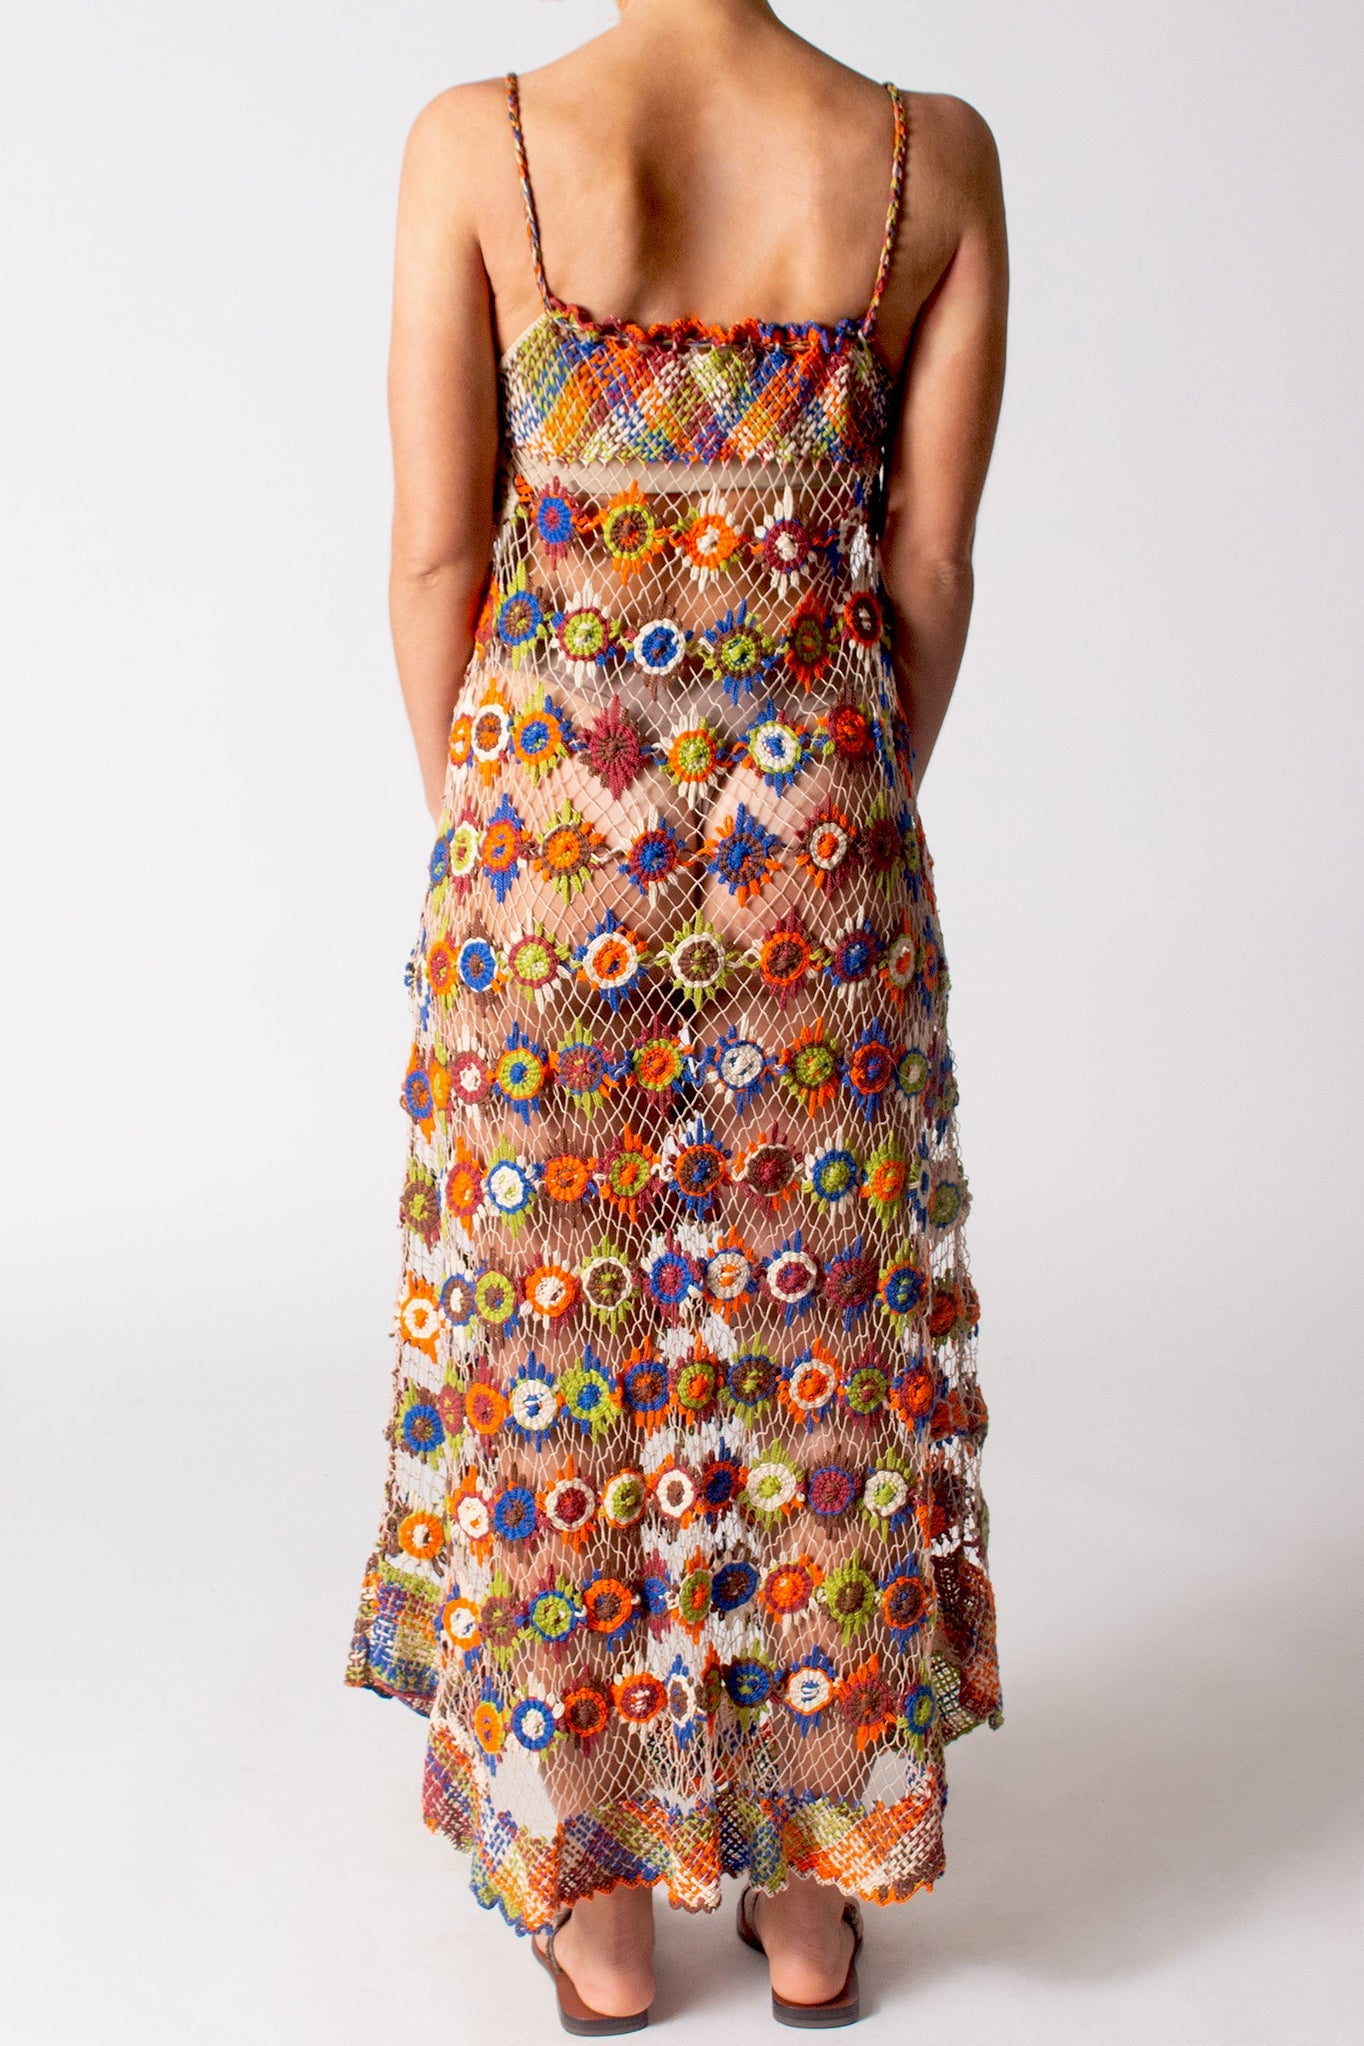 Cristiana Hand Knit Maxi Dress by Miguelina